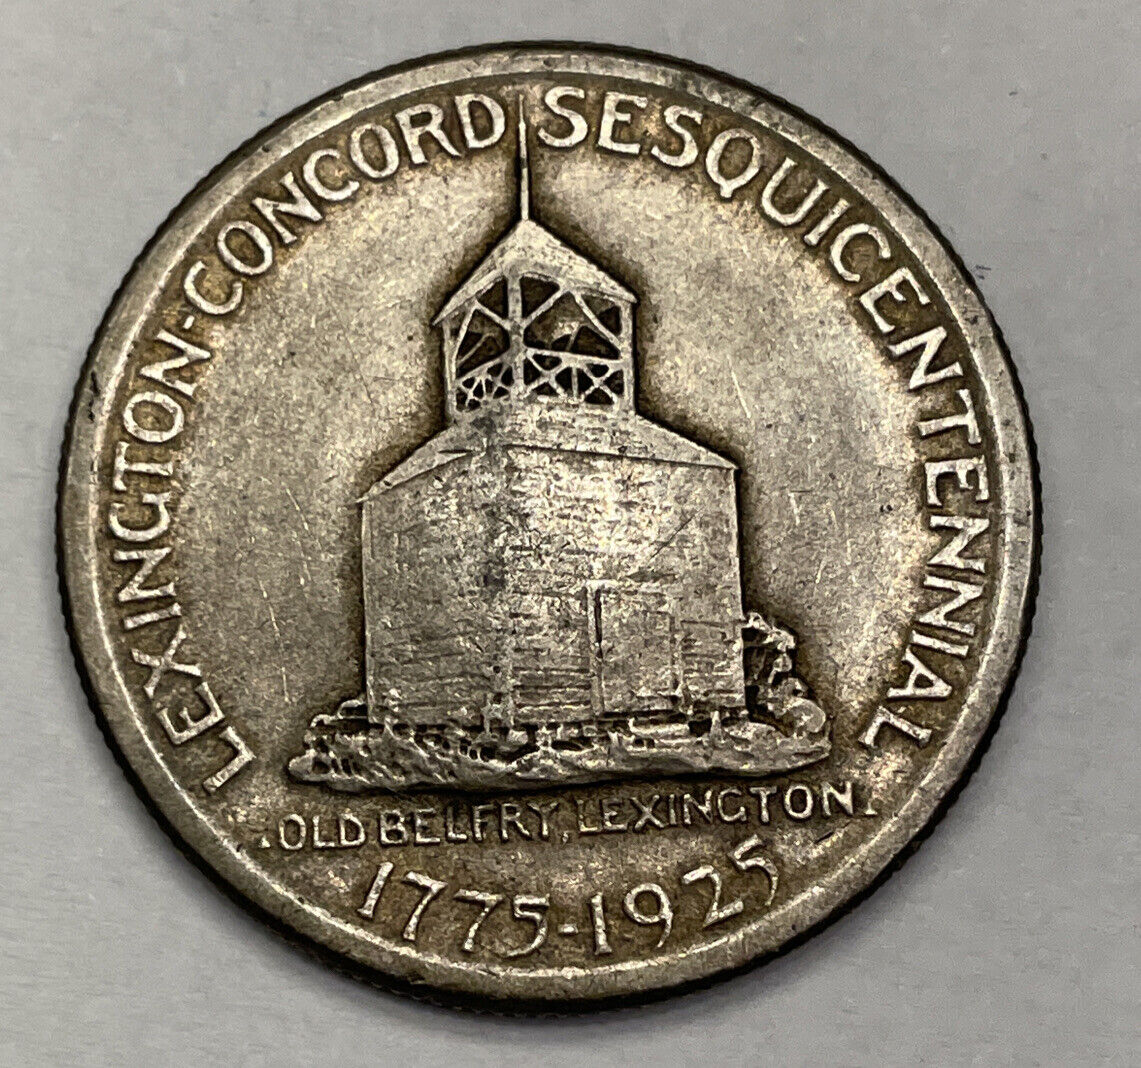 Lexington/Concord Sesqi commemorative Minute Man 1925 Silver Half $ Extra Fine